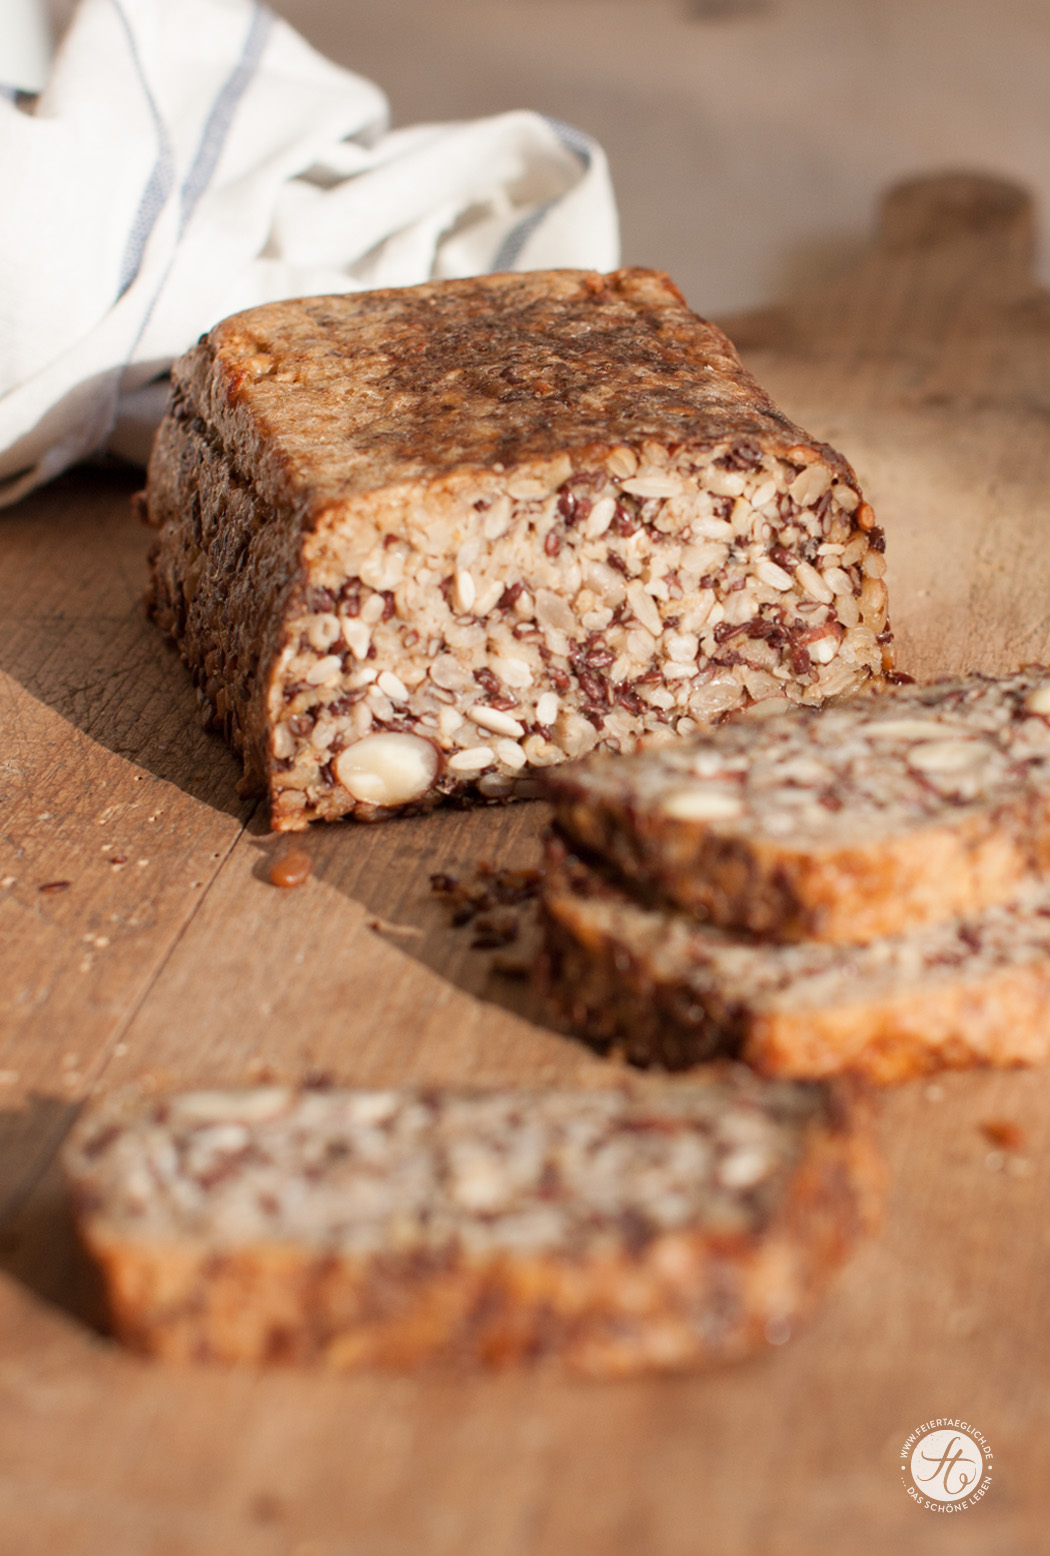 #SuperfoodSamstag mit einem Rezept für das berühmte life-changing Bread von Sarah Britton